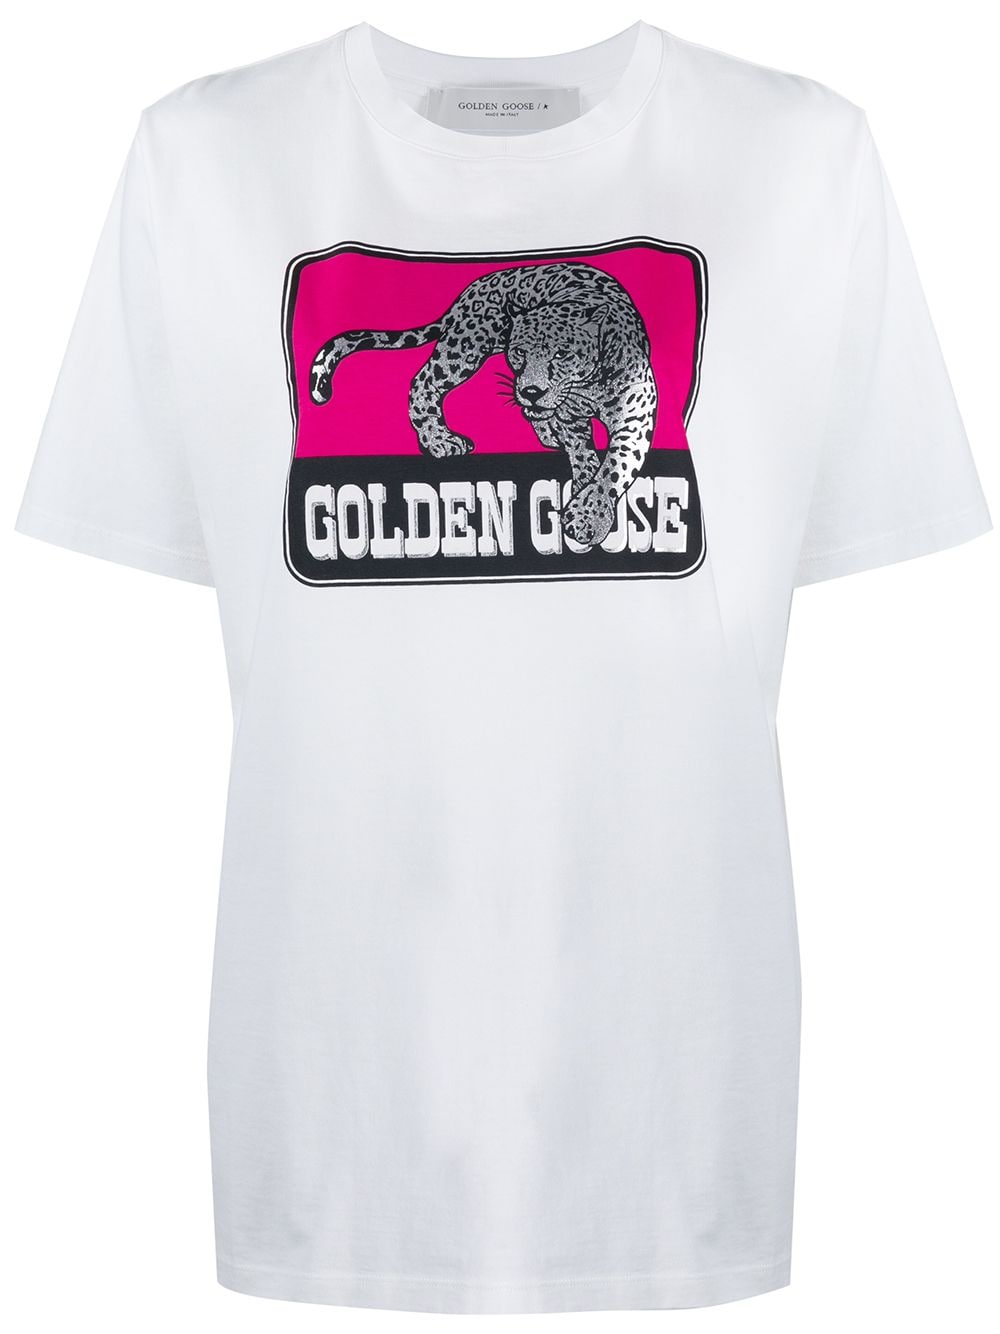 фото Golden goose футболка с графичным логотипом